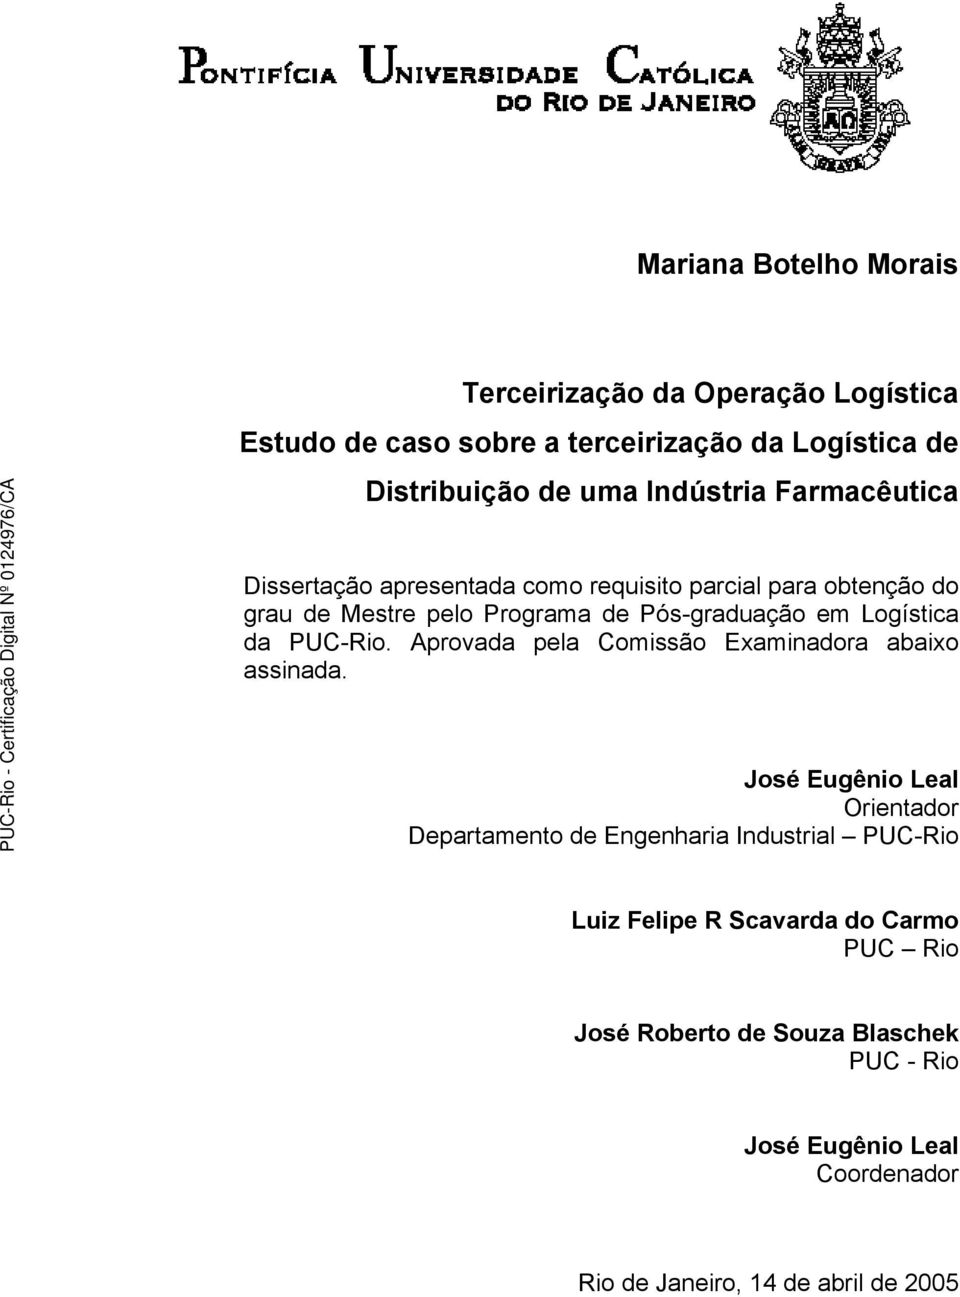 Logística da PUC-Rio. Aprovada pela Comissão Examinadora abaixo assinada.